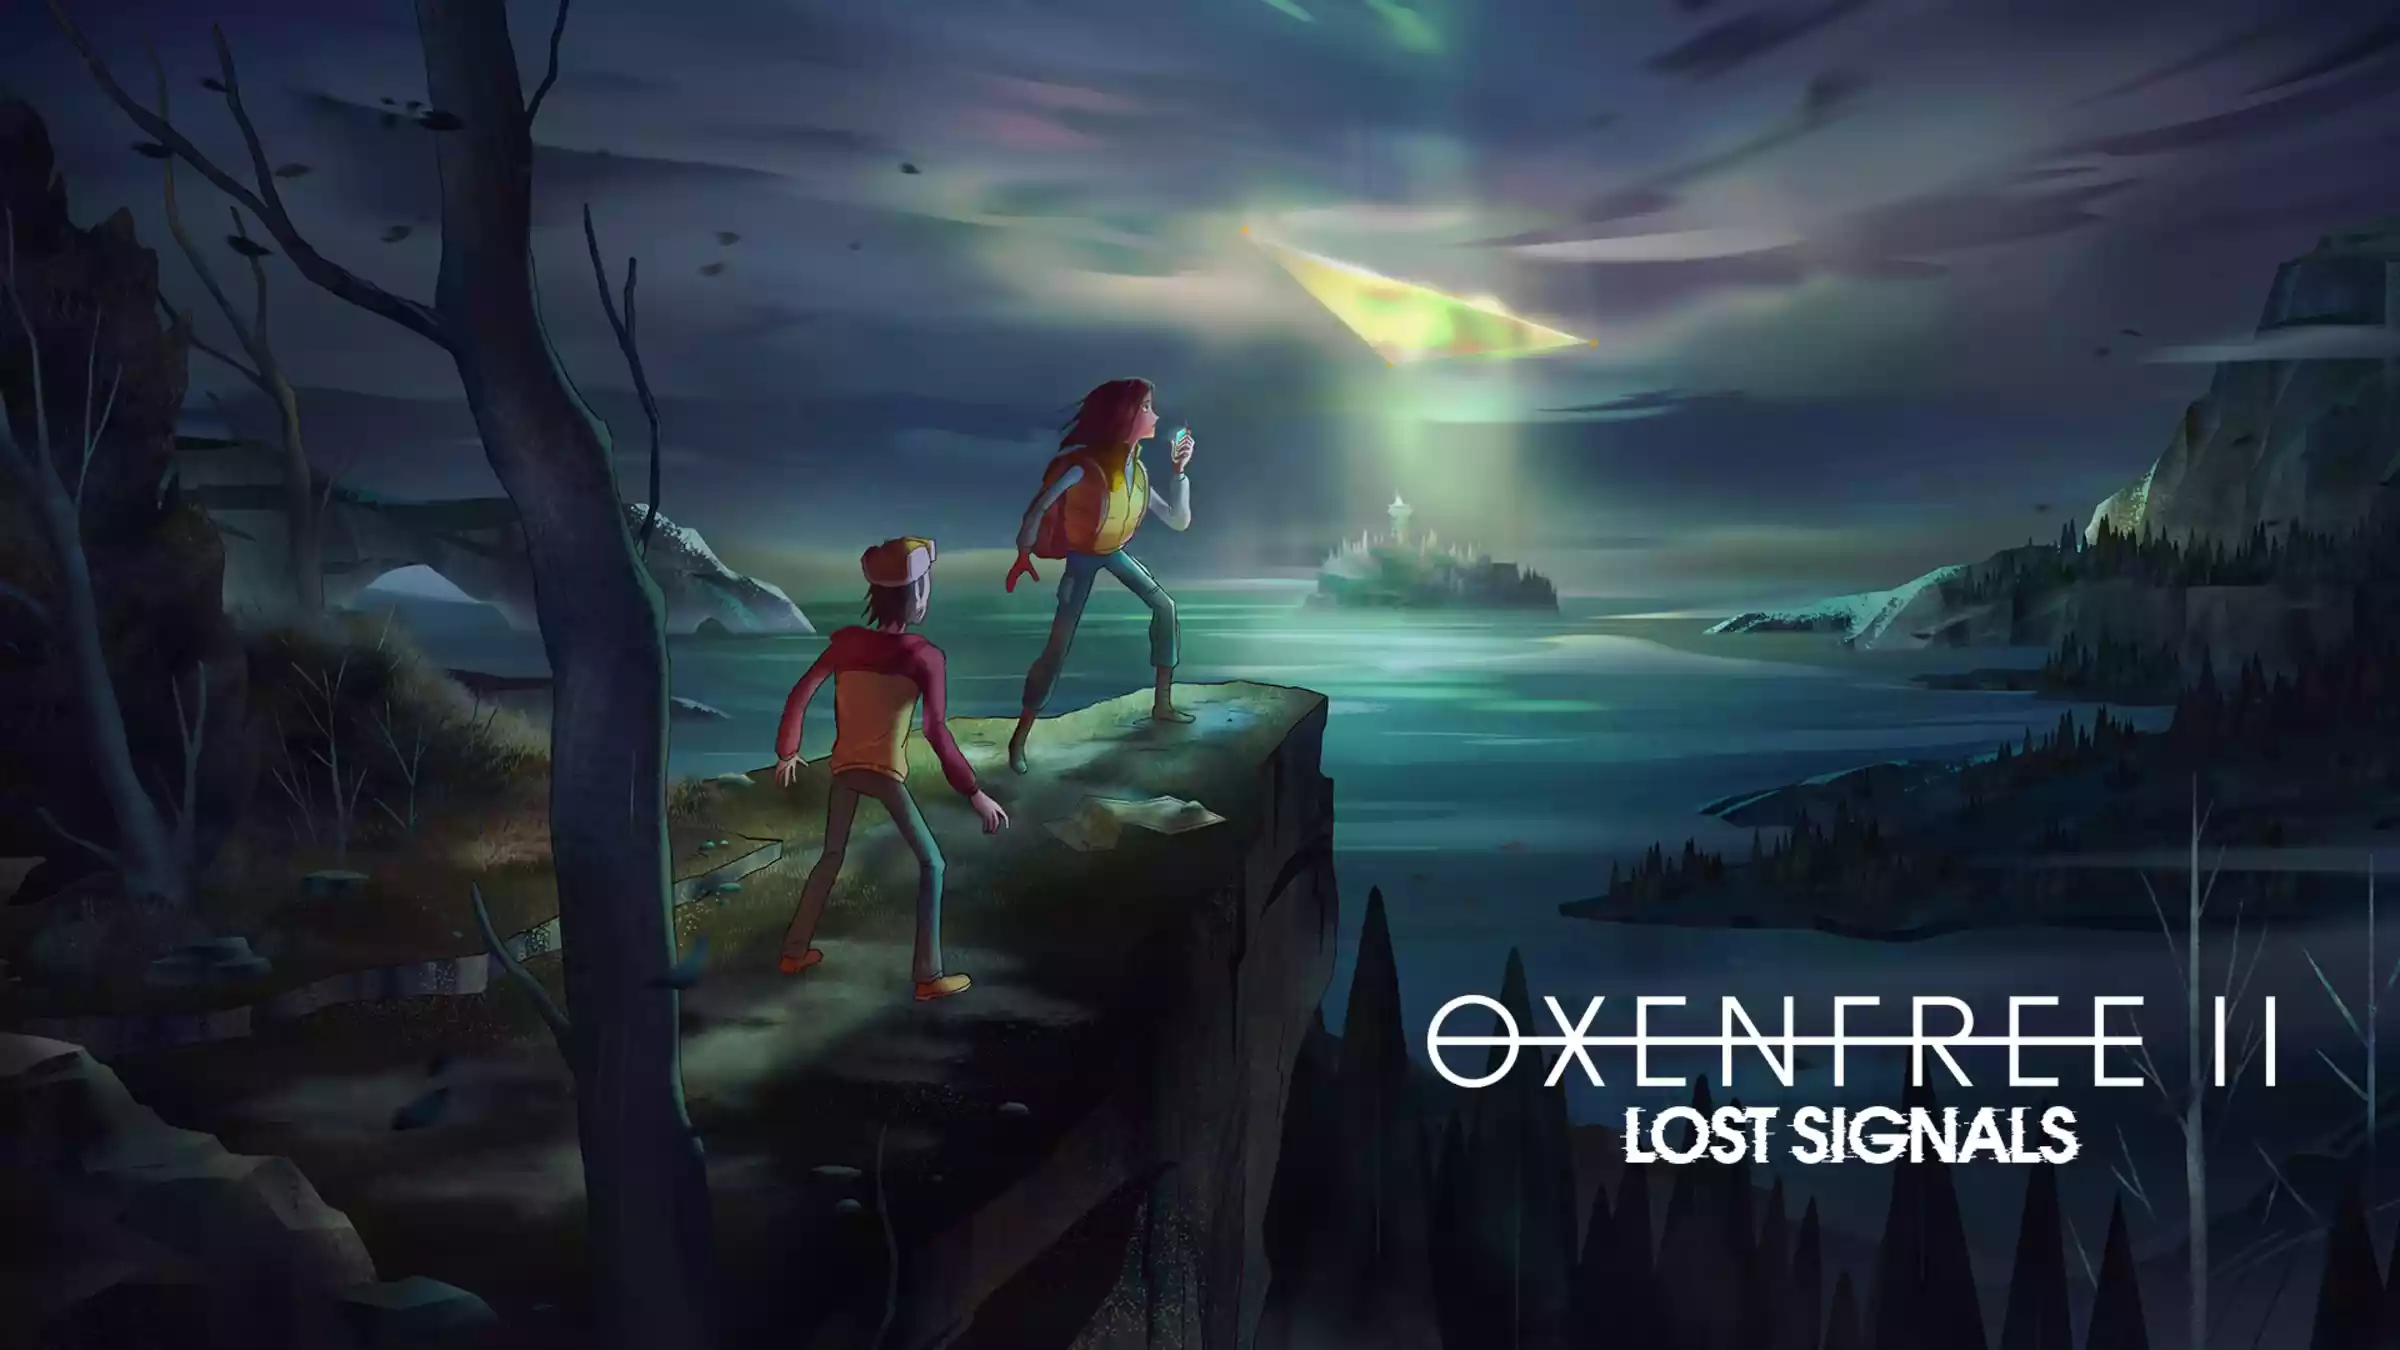 داستان بازی Oxenfree 2: Lost Signals